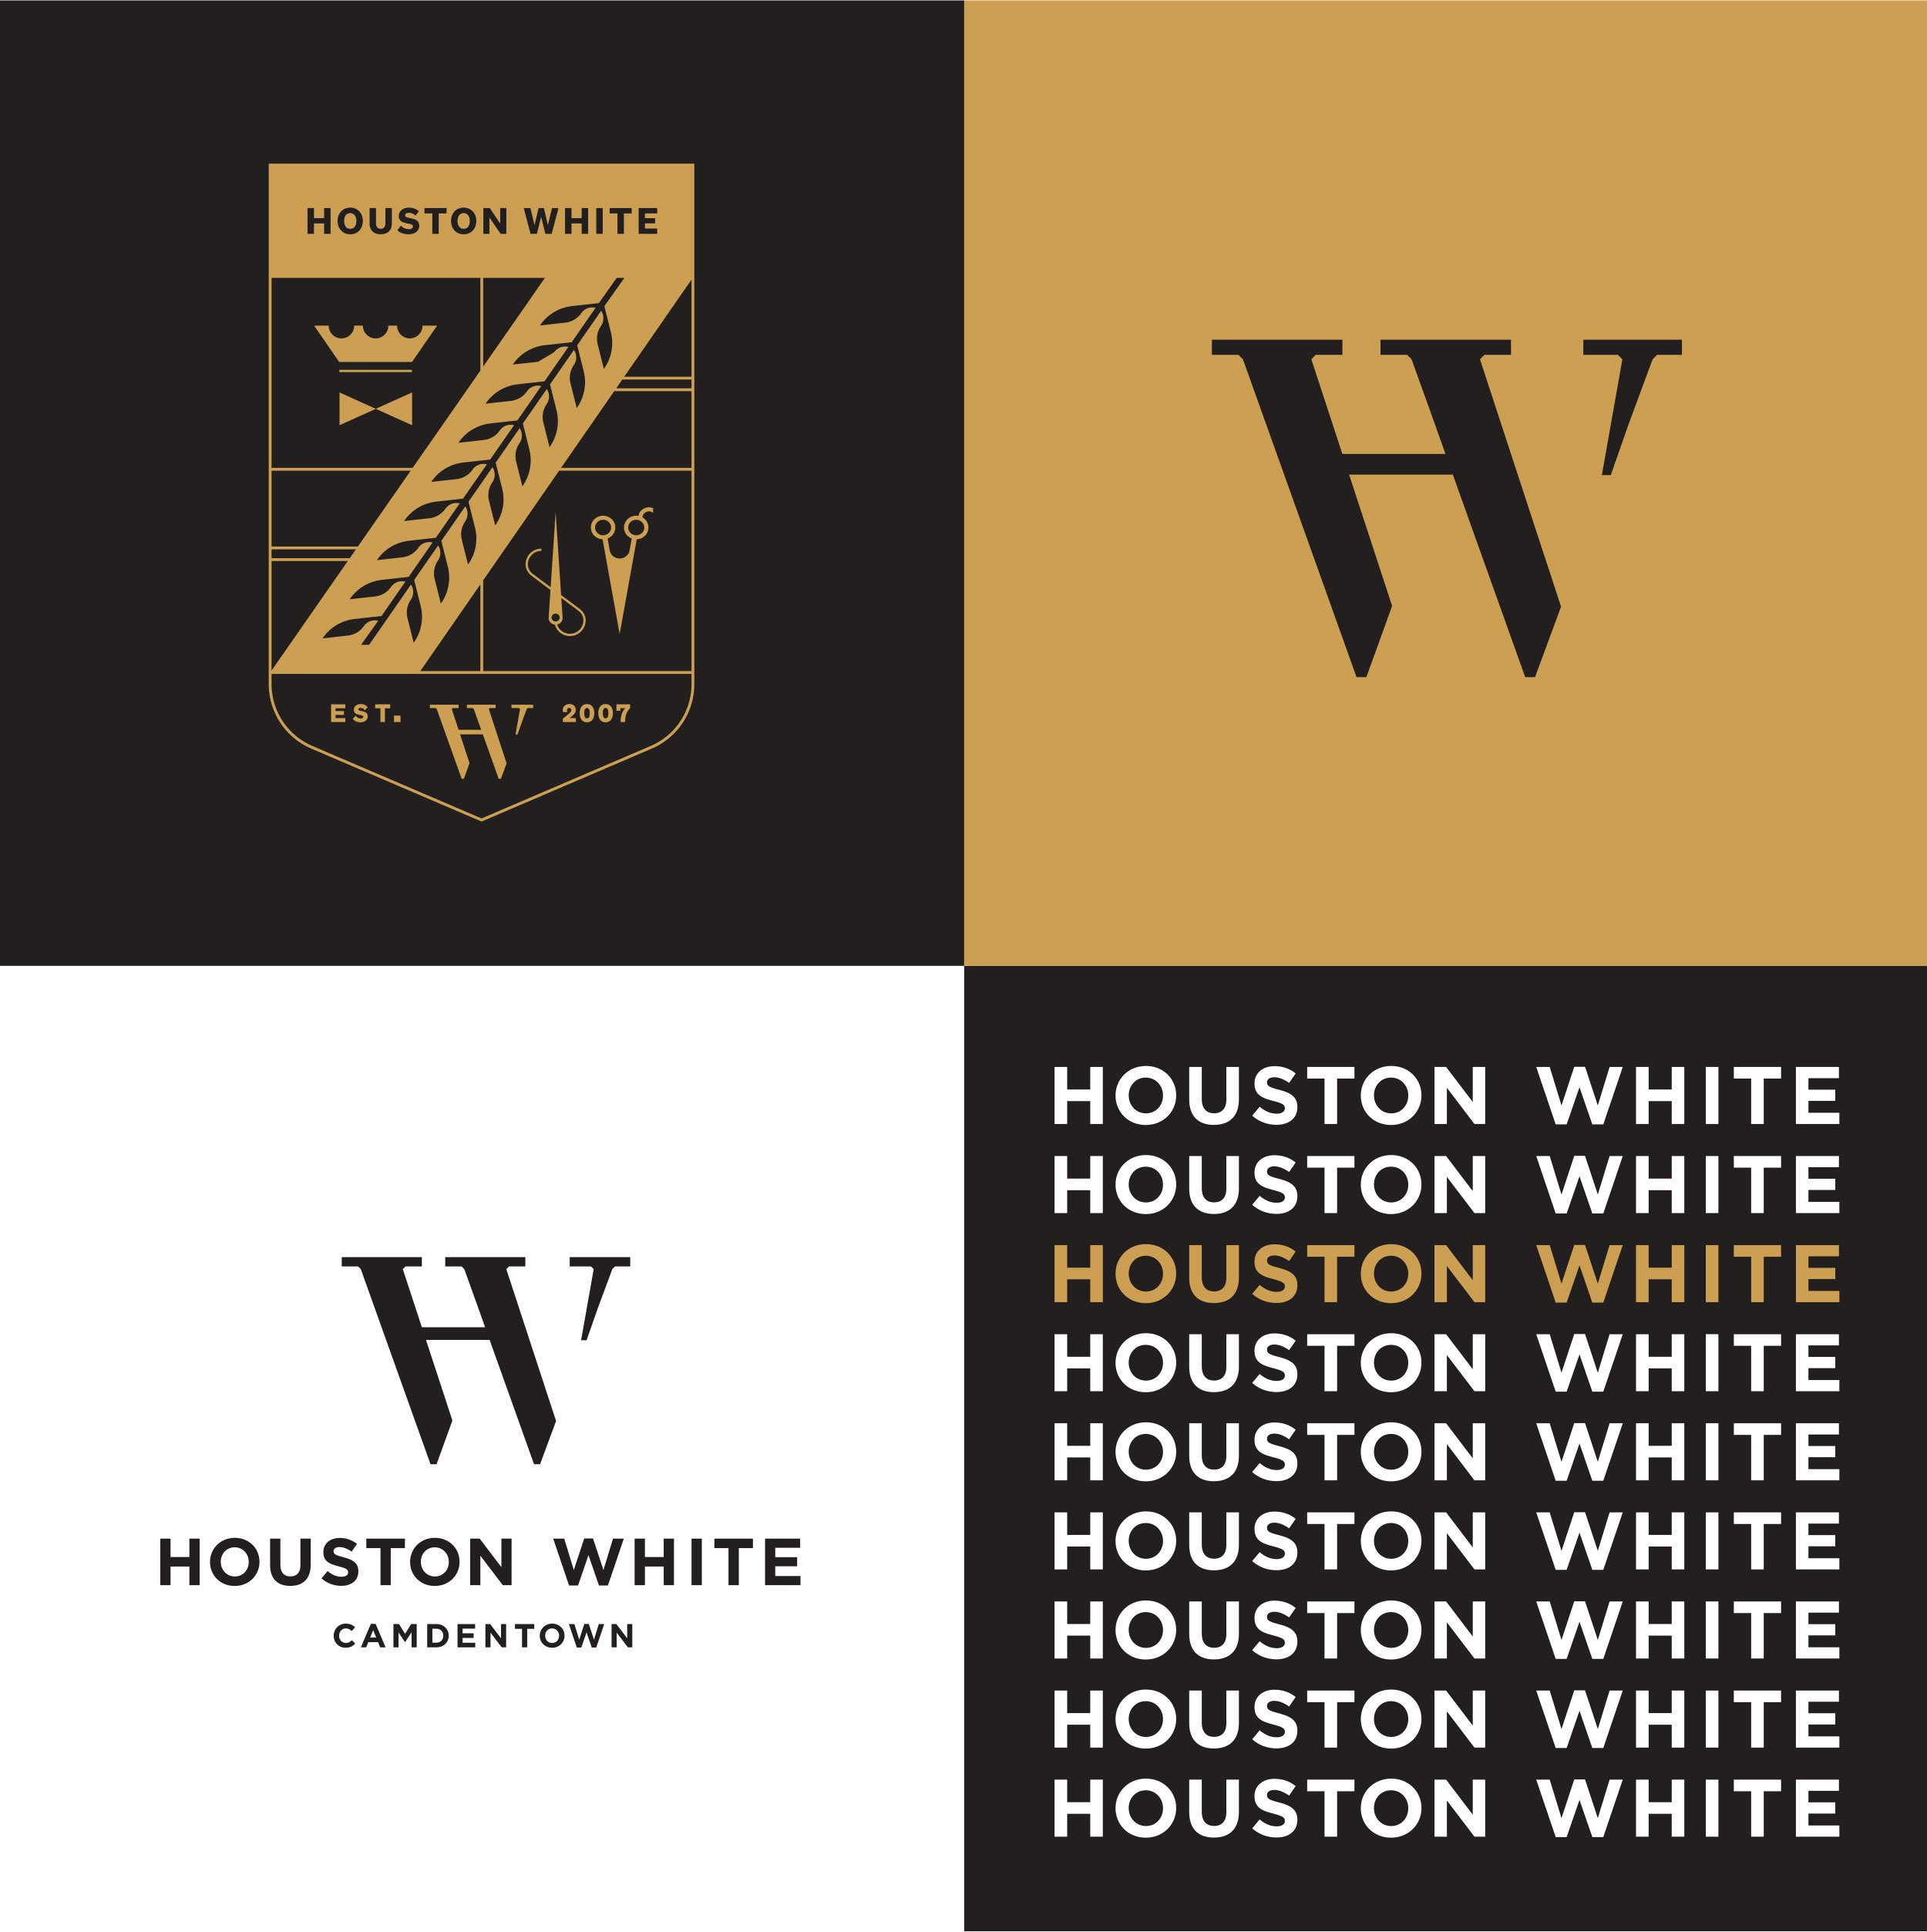 Houston_White_Brand_Identity_03.jpg